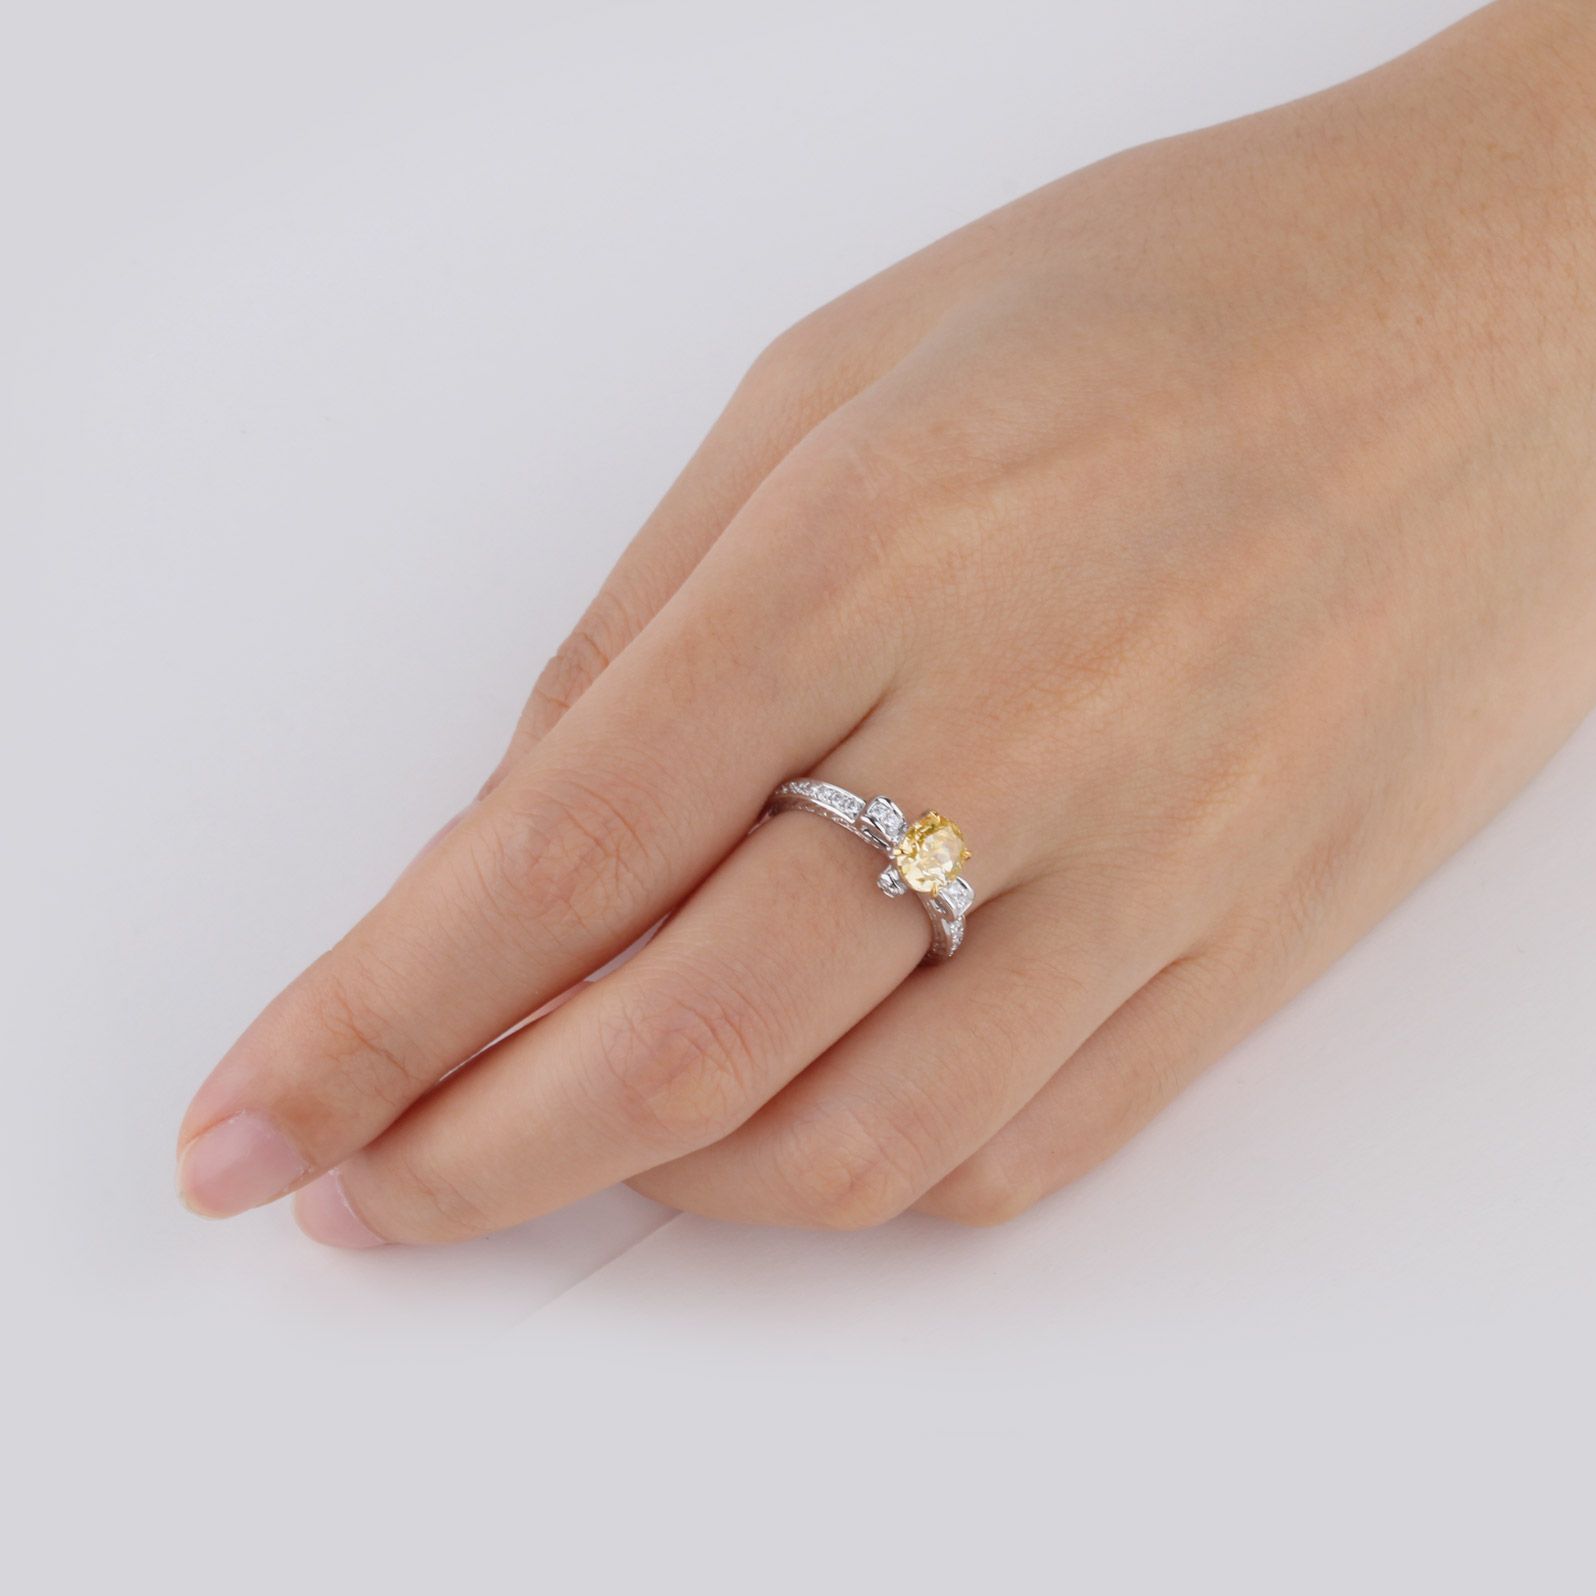 浓 黄色 钻石 戒指, 1.07 重量 (1.31 克拉 总重), 椭圆型 形状, GIA 认证, 2176006642